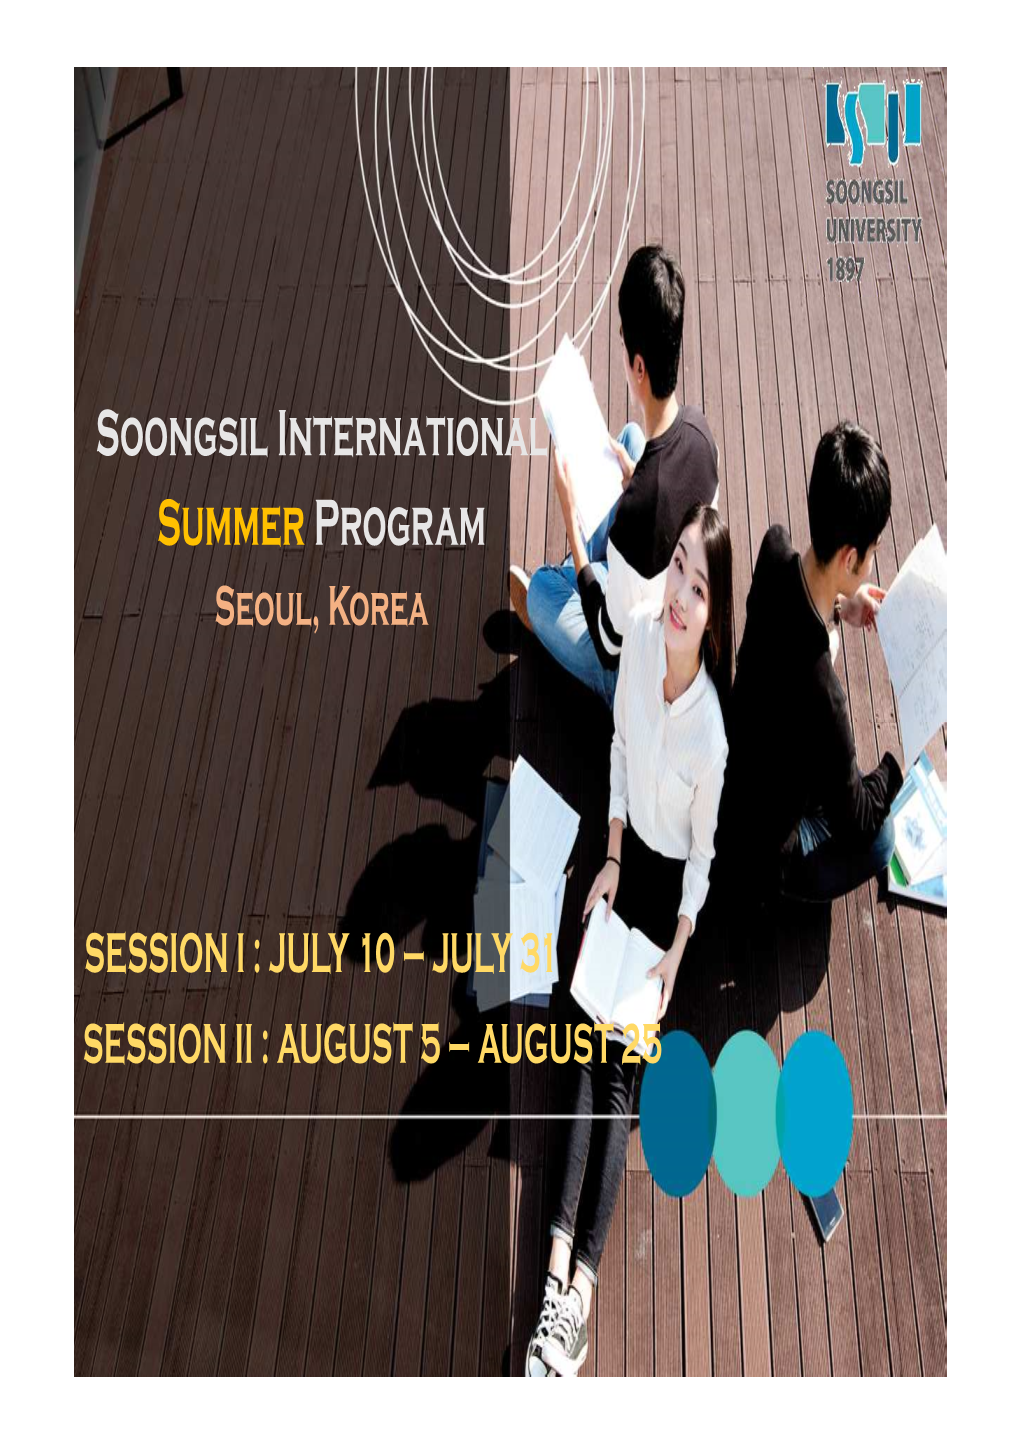 Soongsil International Summer Program Seoul, Korea